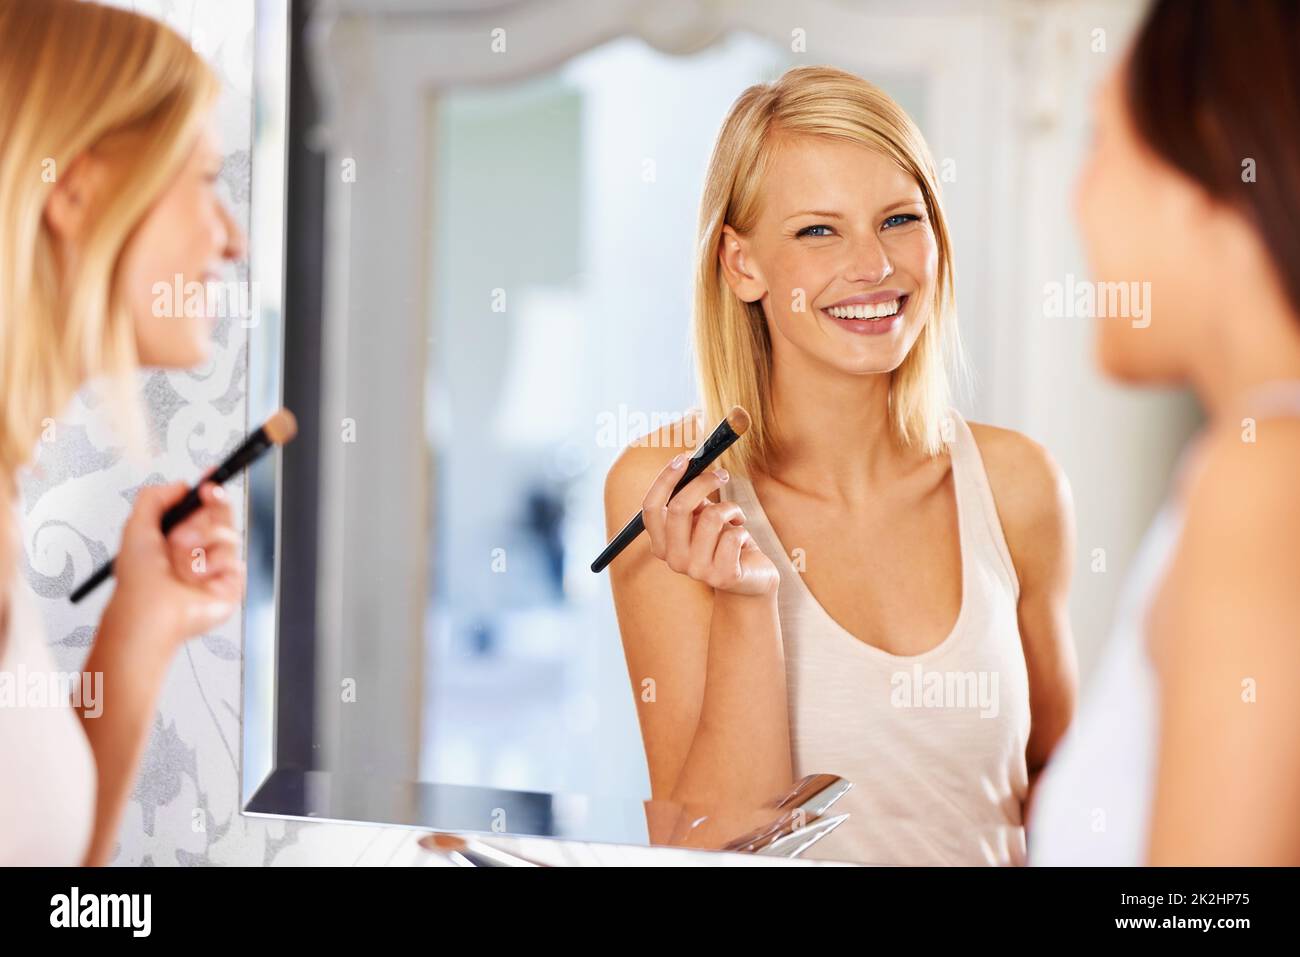 Ihre Haut sieht strahlend schön aus. Eine junge Frau, die sich vor einem Spiegel schminkt, während ihre Freundin dabei steht. Stockfoto